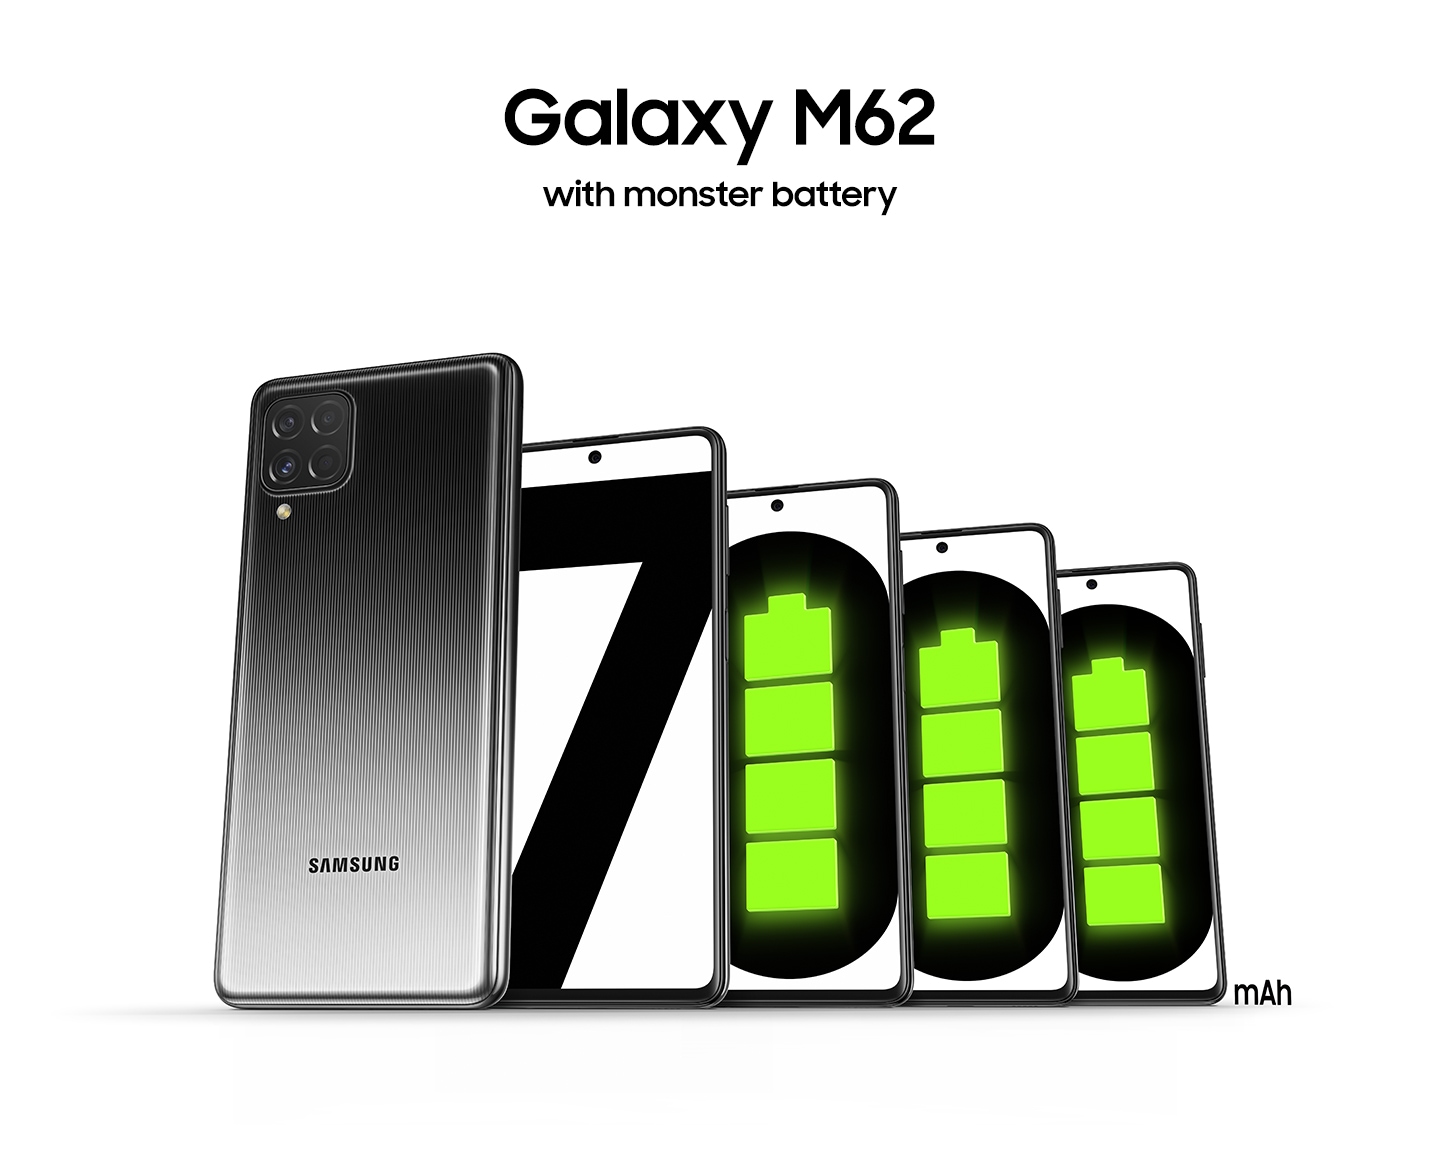 Vue arrière du Galaxy M62 noir et 4 vue de face des smartphones se tiennent côte à côte. Chaque 4 écrans indique la lettre «7000», ce qui signifie une batterie puissante de 7000 mAh dans l'ordre, les icônes vertes de batterie pleine remplissent la lettre «0» brillamment. Le texte de titre 'Galaxy M62 avec batterie monstre' est au-dessus de ceux-ci.